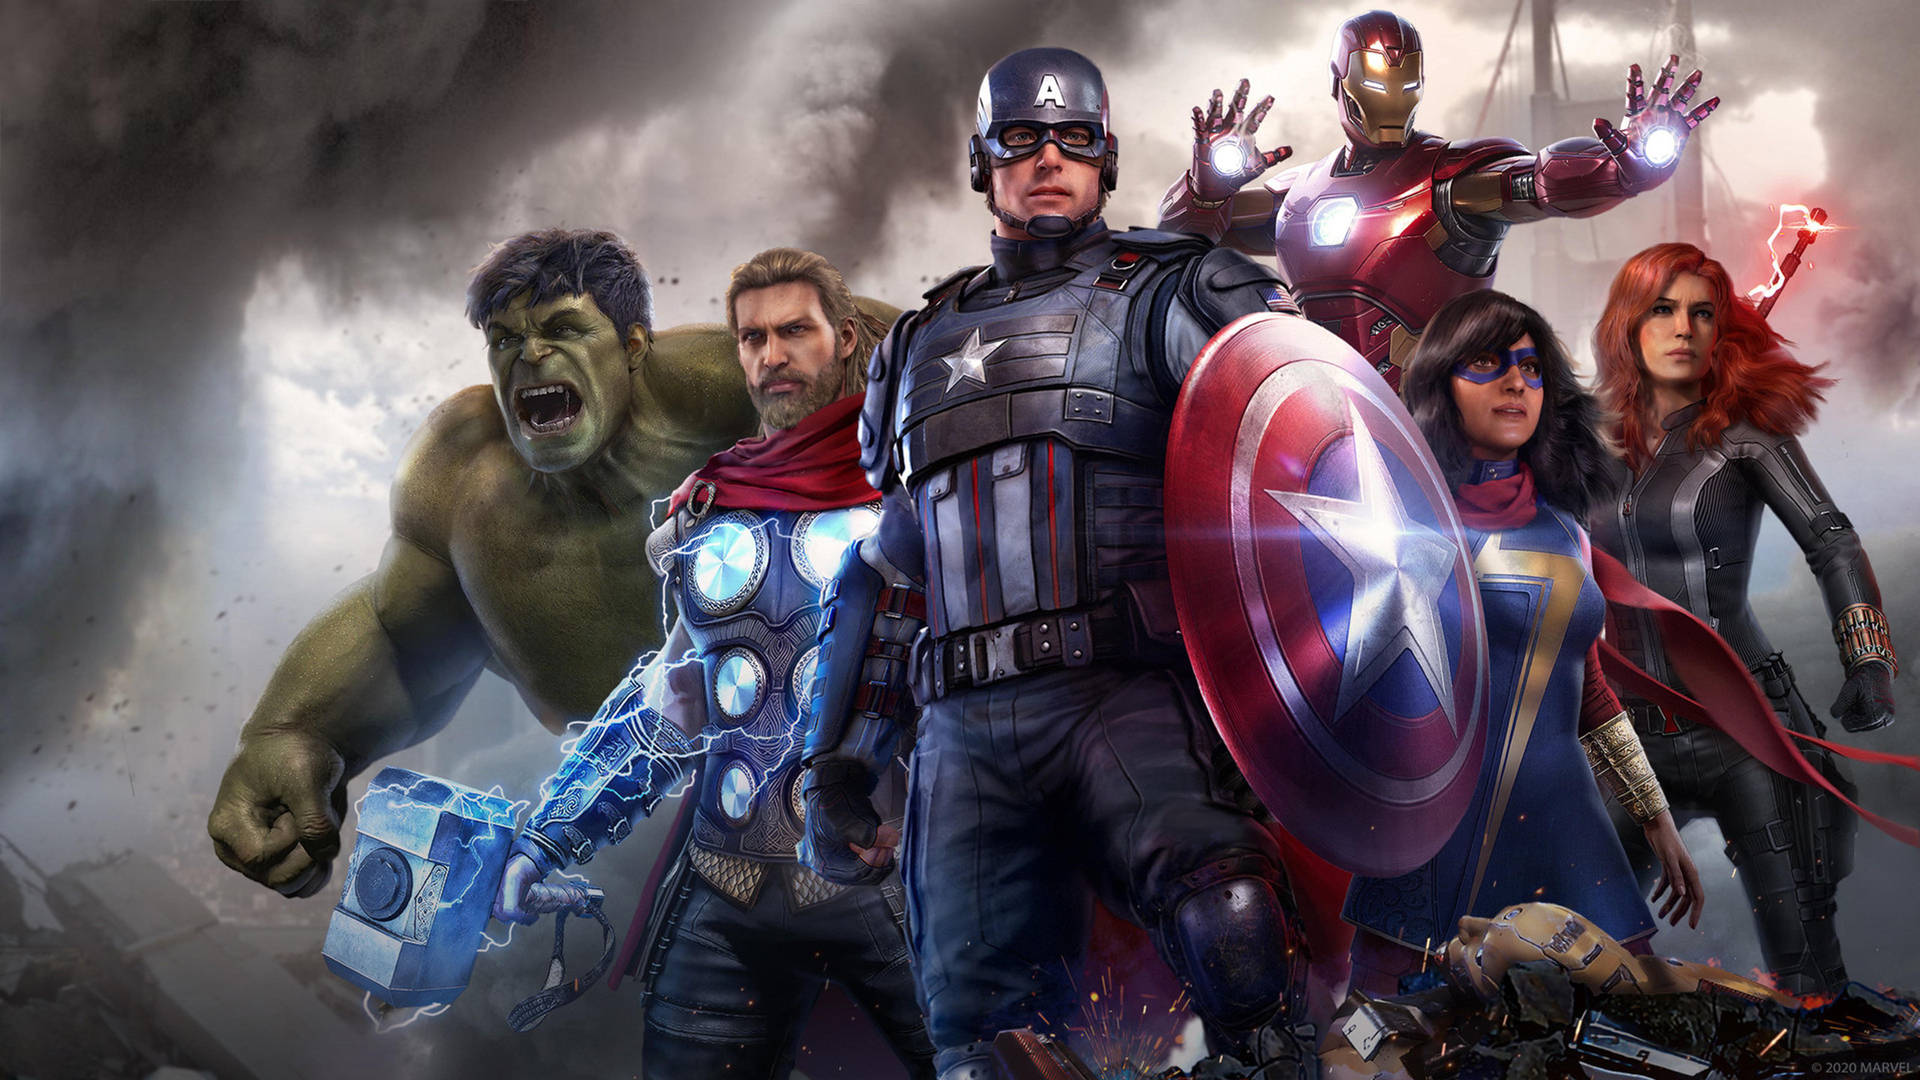 De Originale Superhelte - The Avengers. Wallpaper